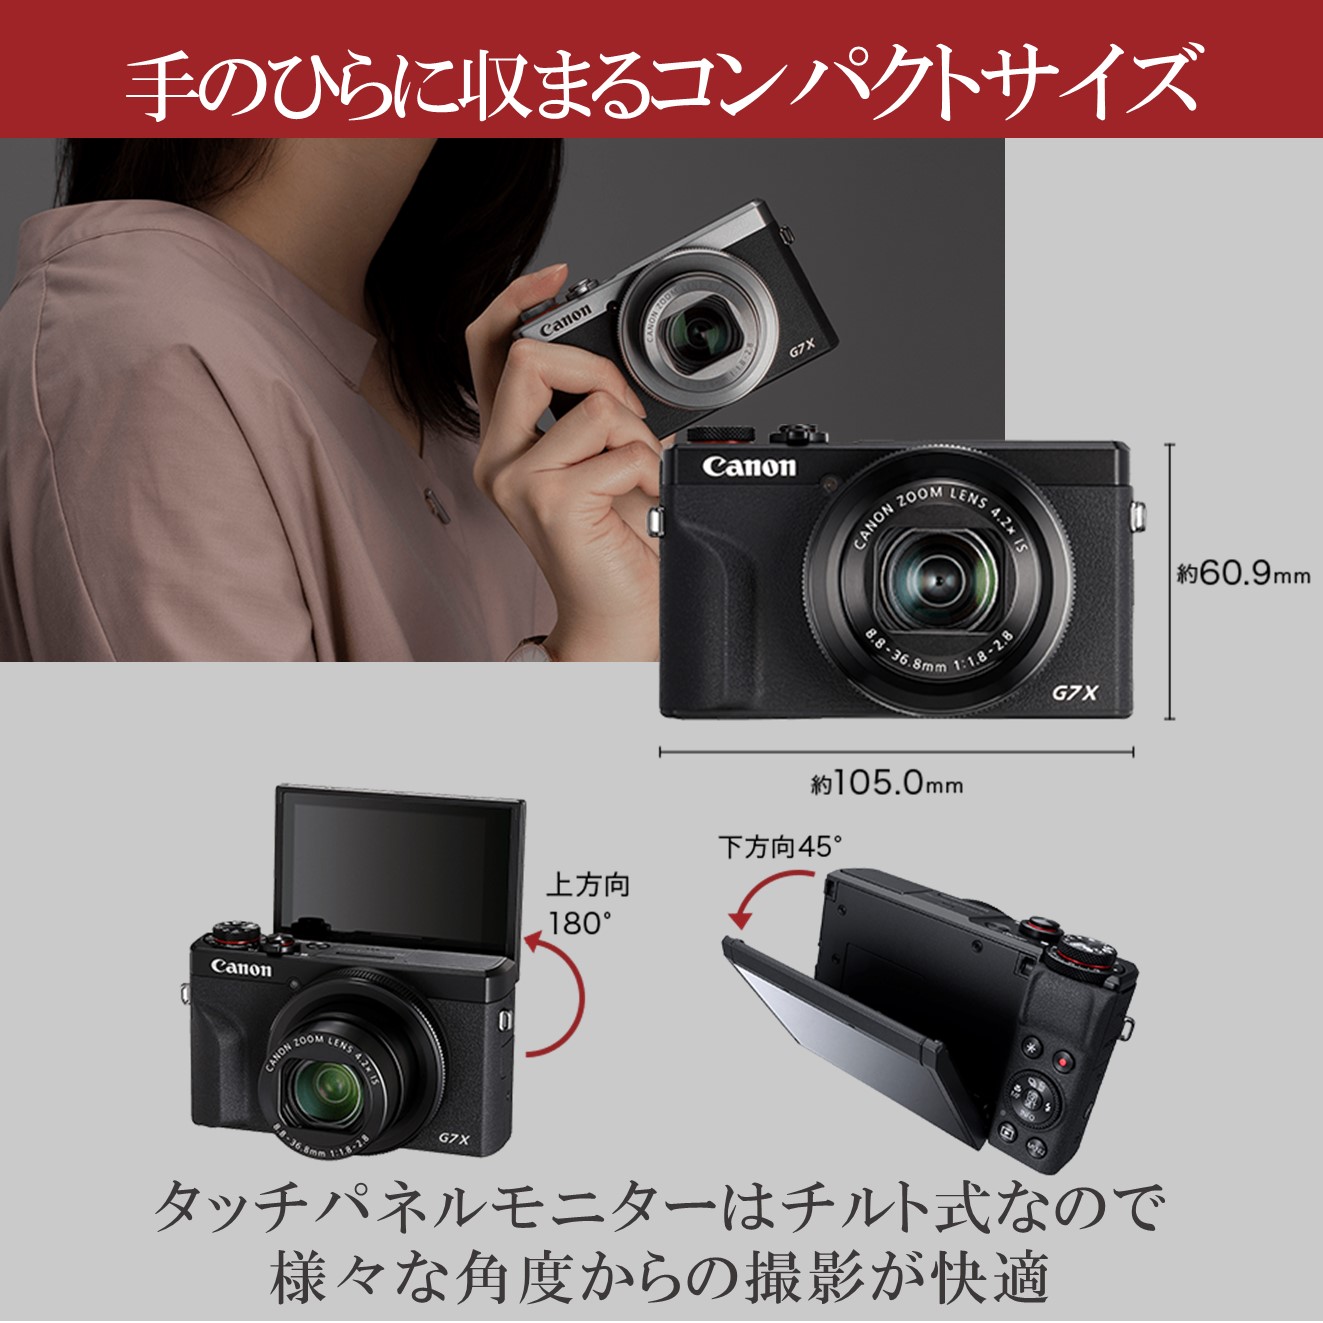 【人気のG7X最新機種♪] Canon PowerShot G7X Mark Ⅲ